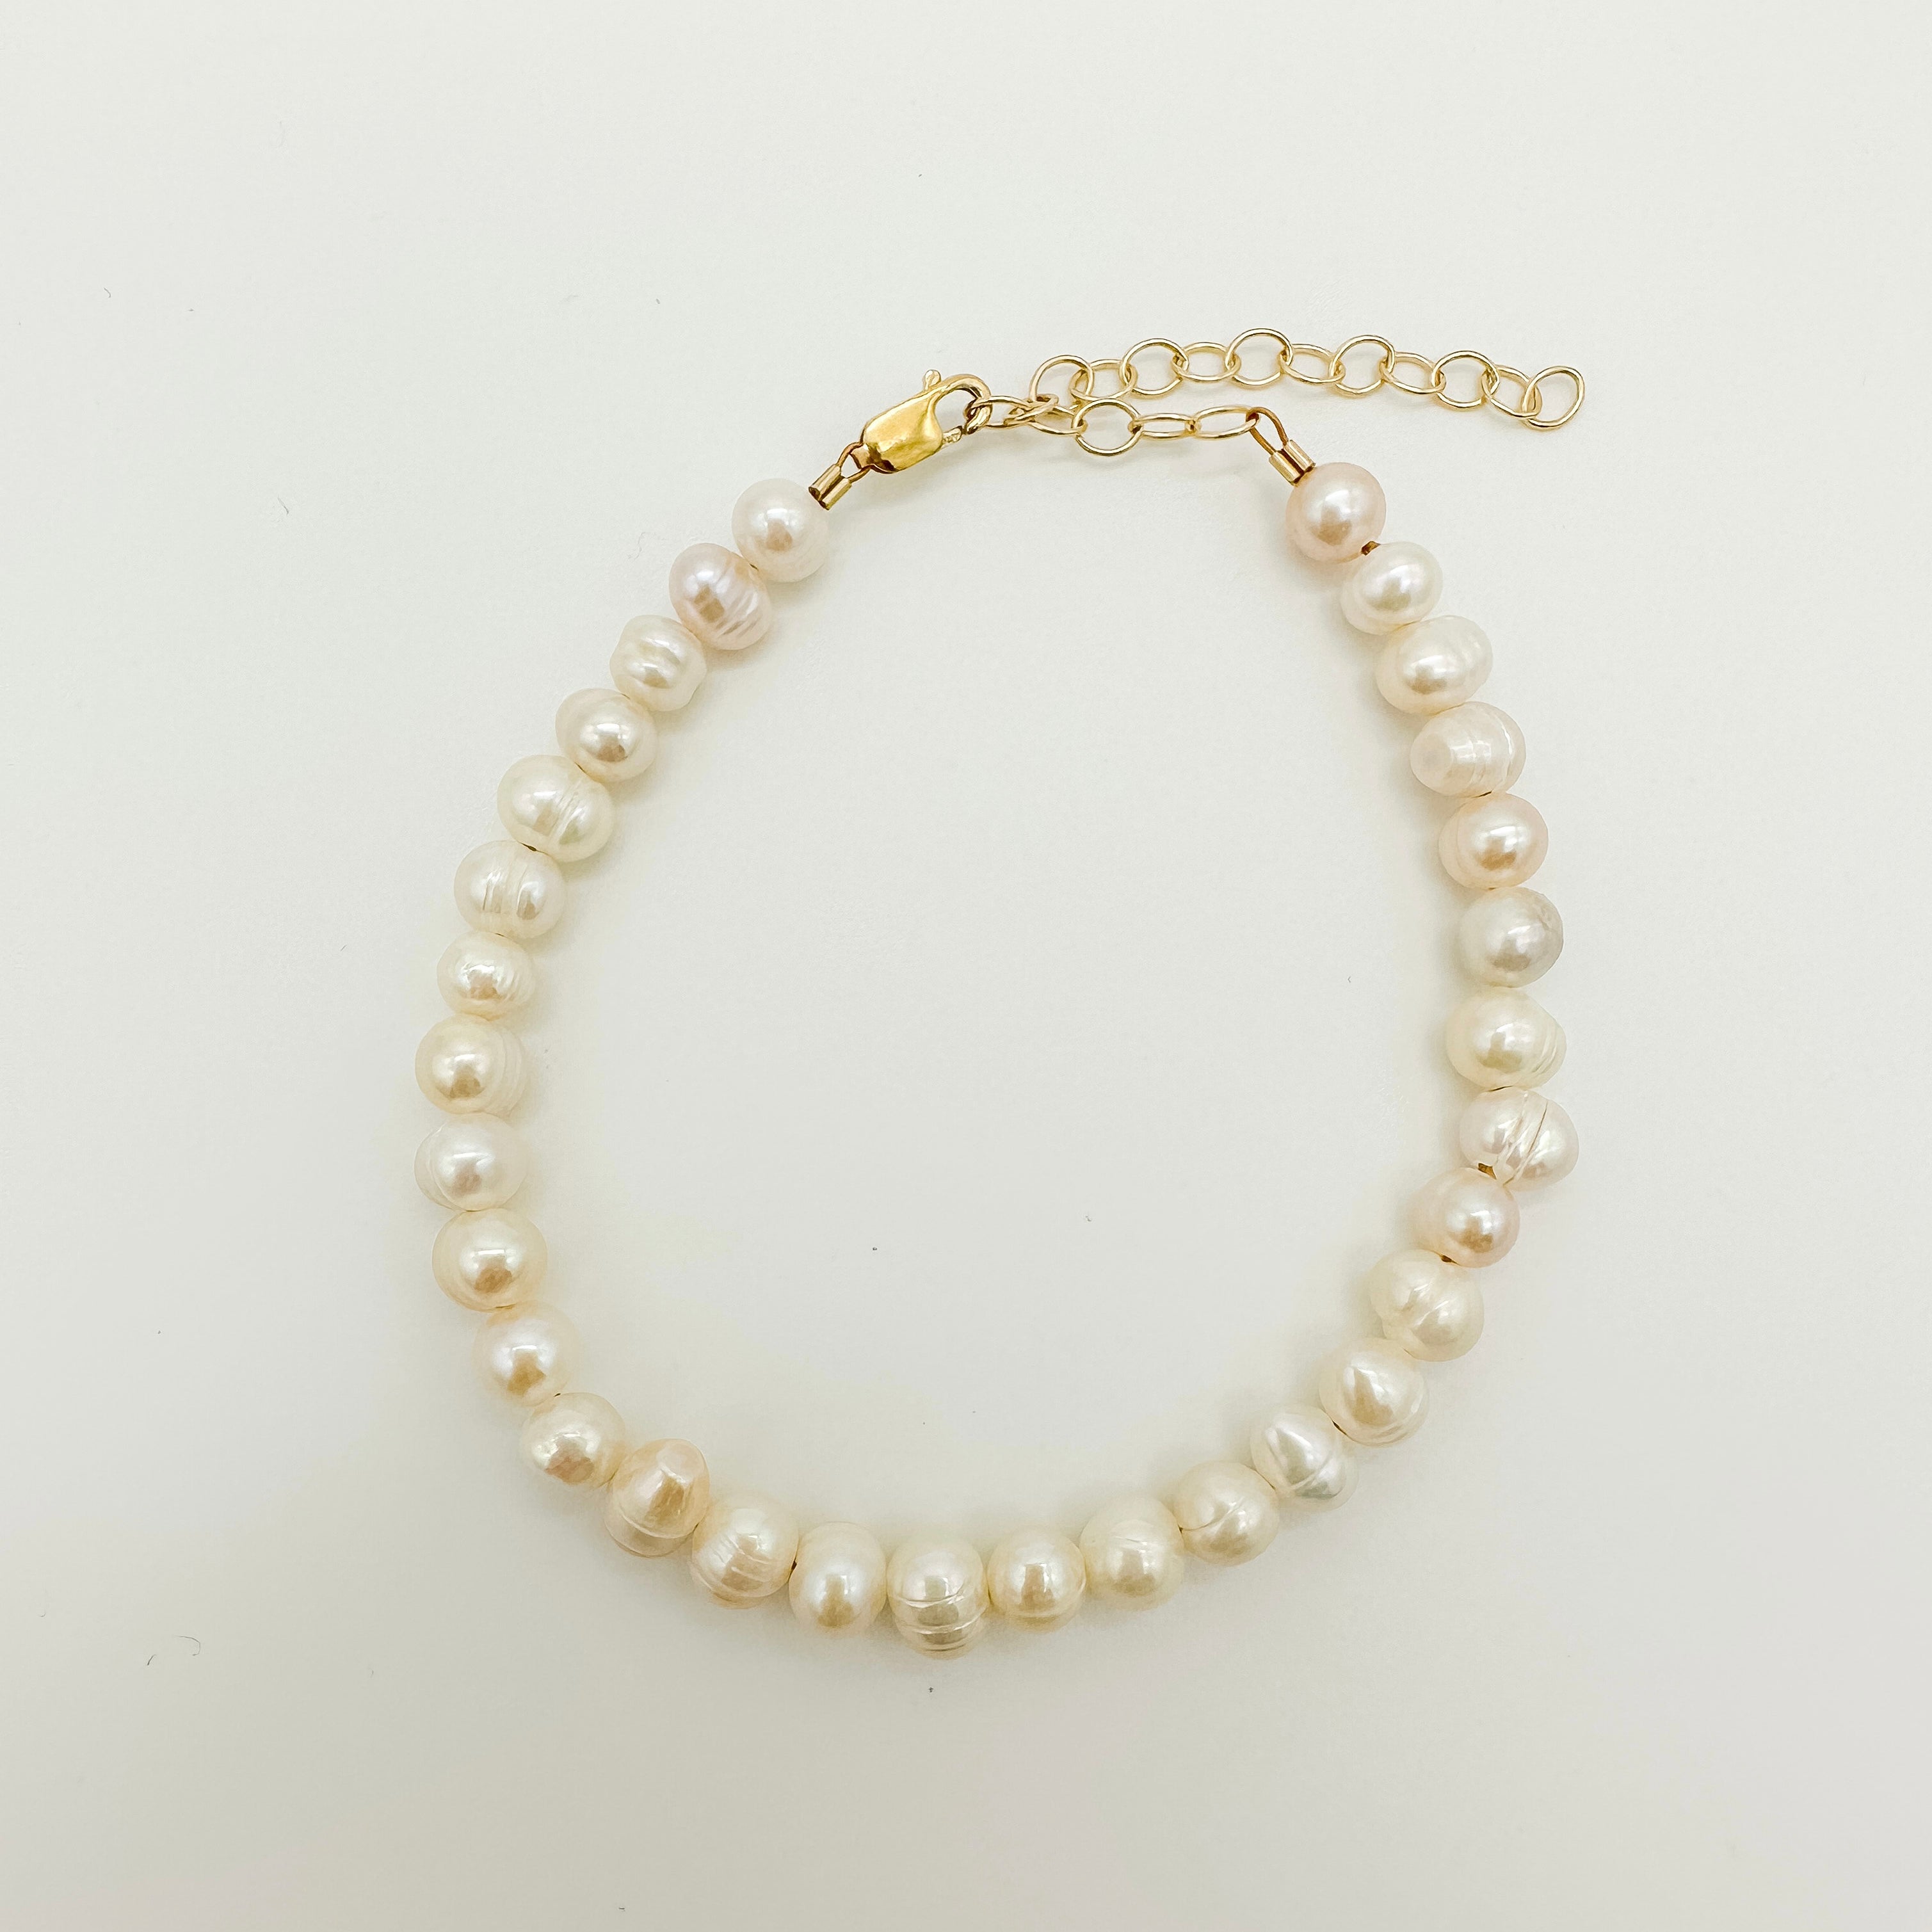 freshwater pearl bracelet / pearl beaded bracelet / adjustable pearl bracelet / modern pearl bracelet / freshwater pearls